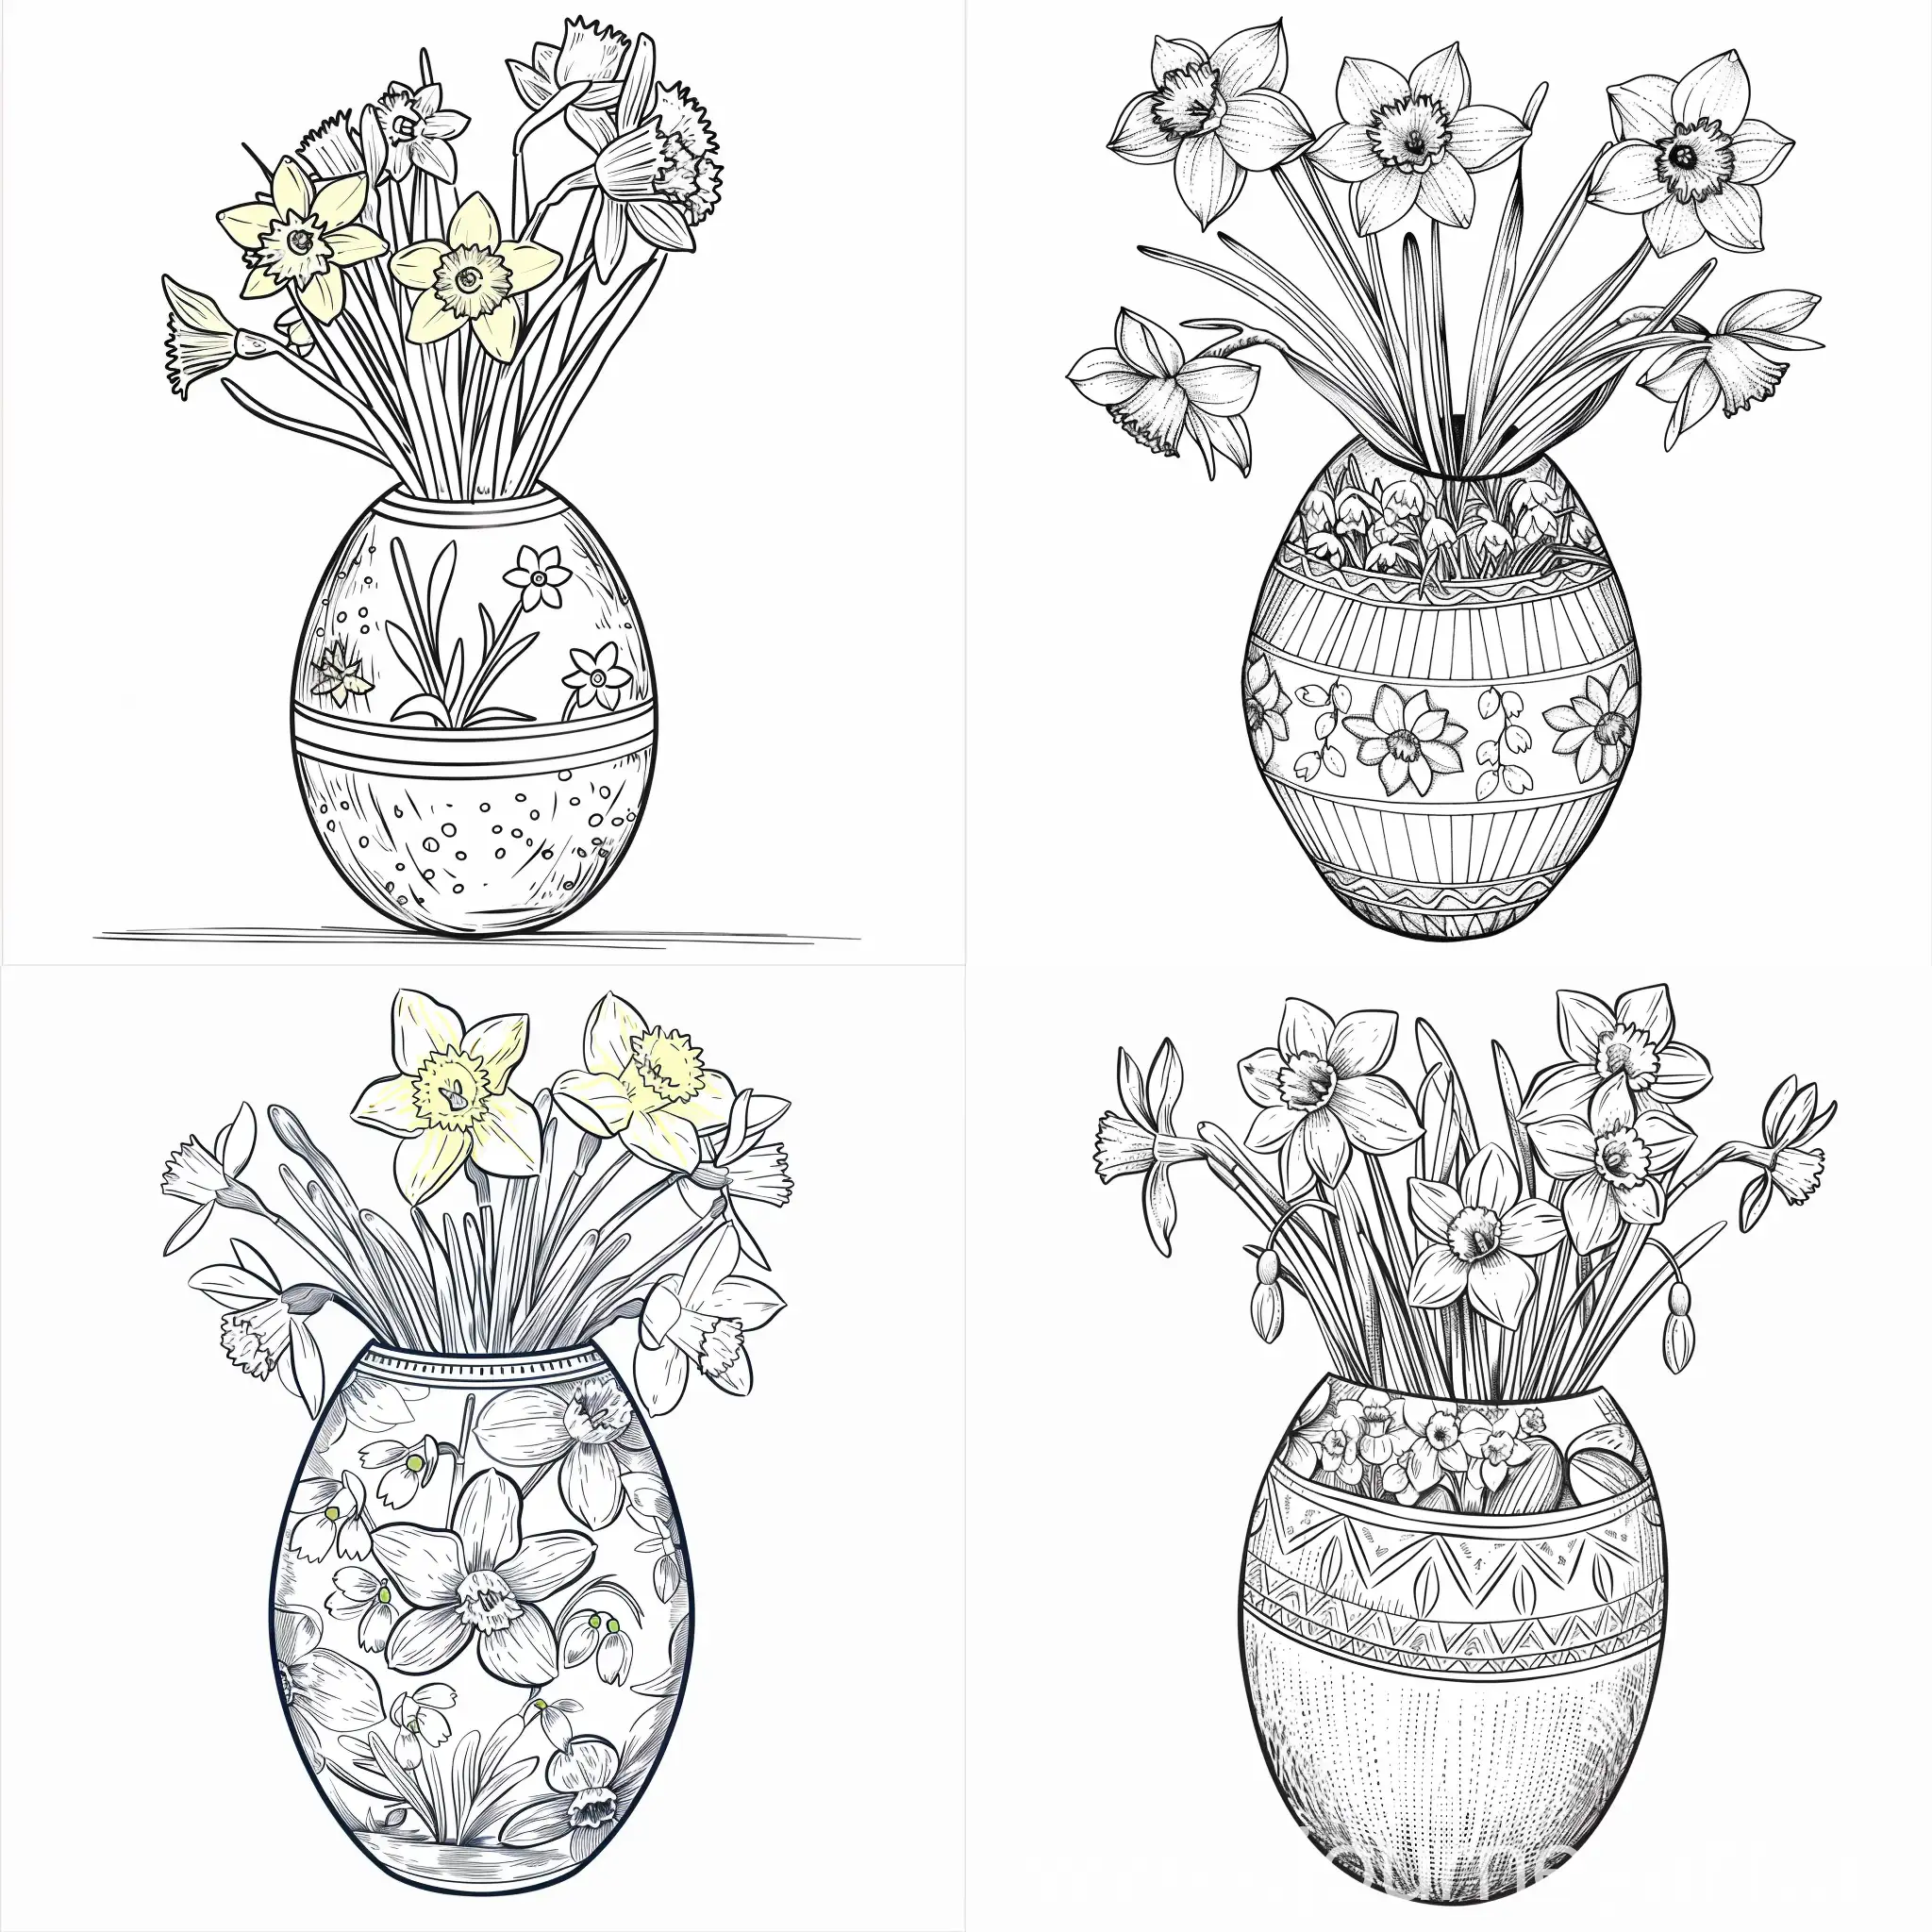 Großes Osterei als vase, Ei mit narzissen verziert, schneeglöckchen innen. Zum selber colorieren